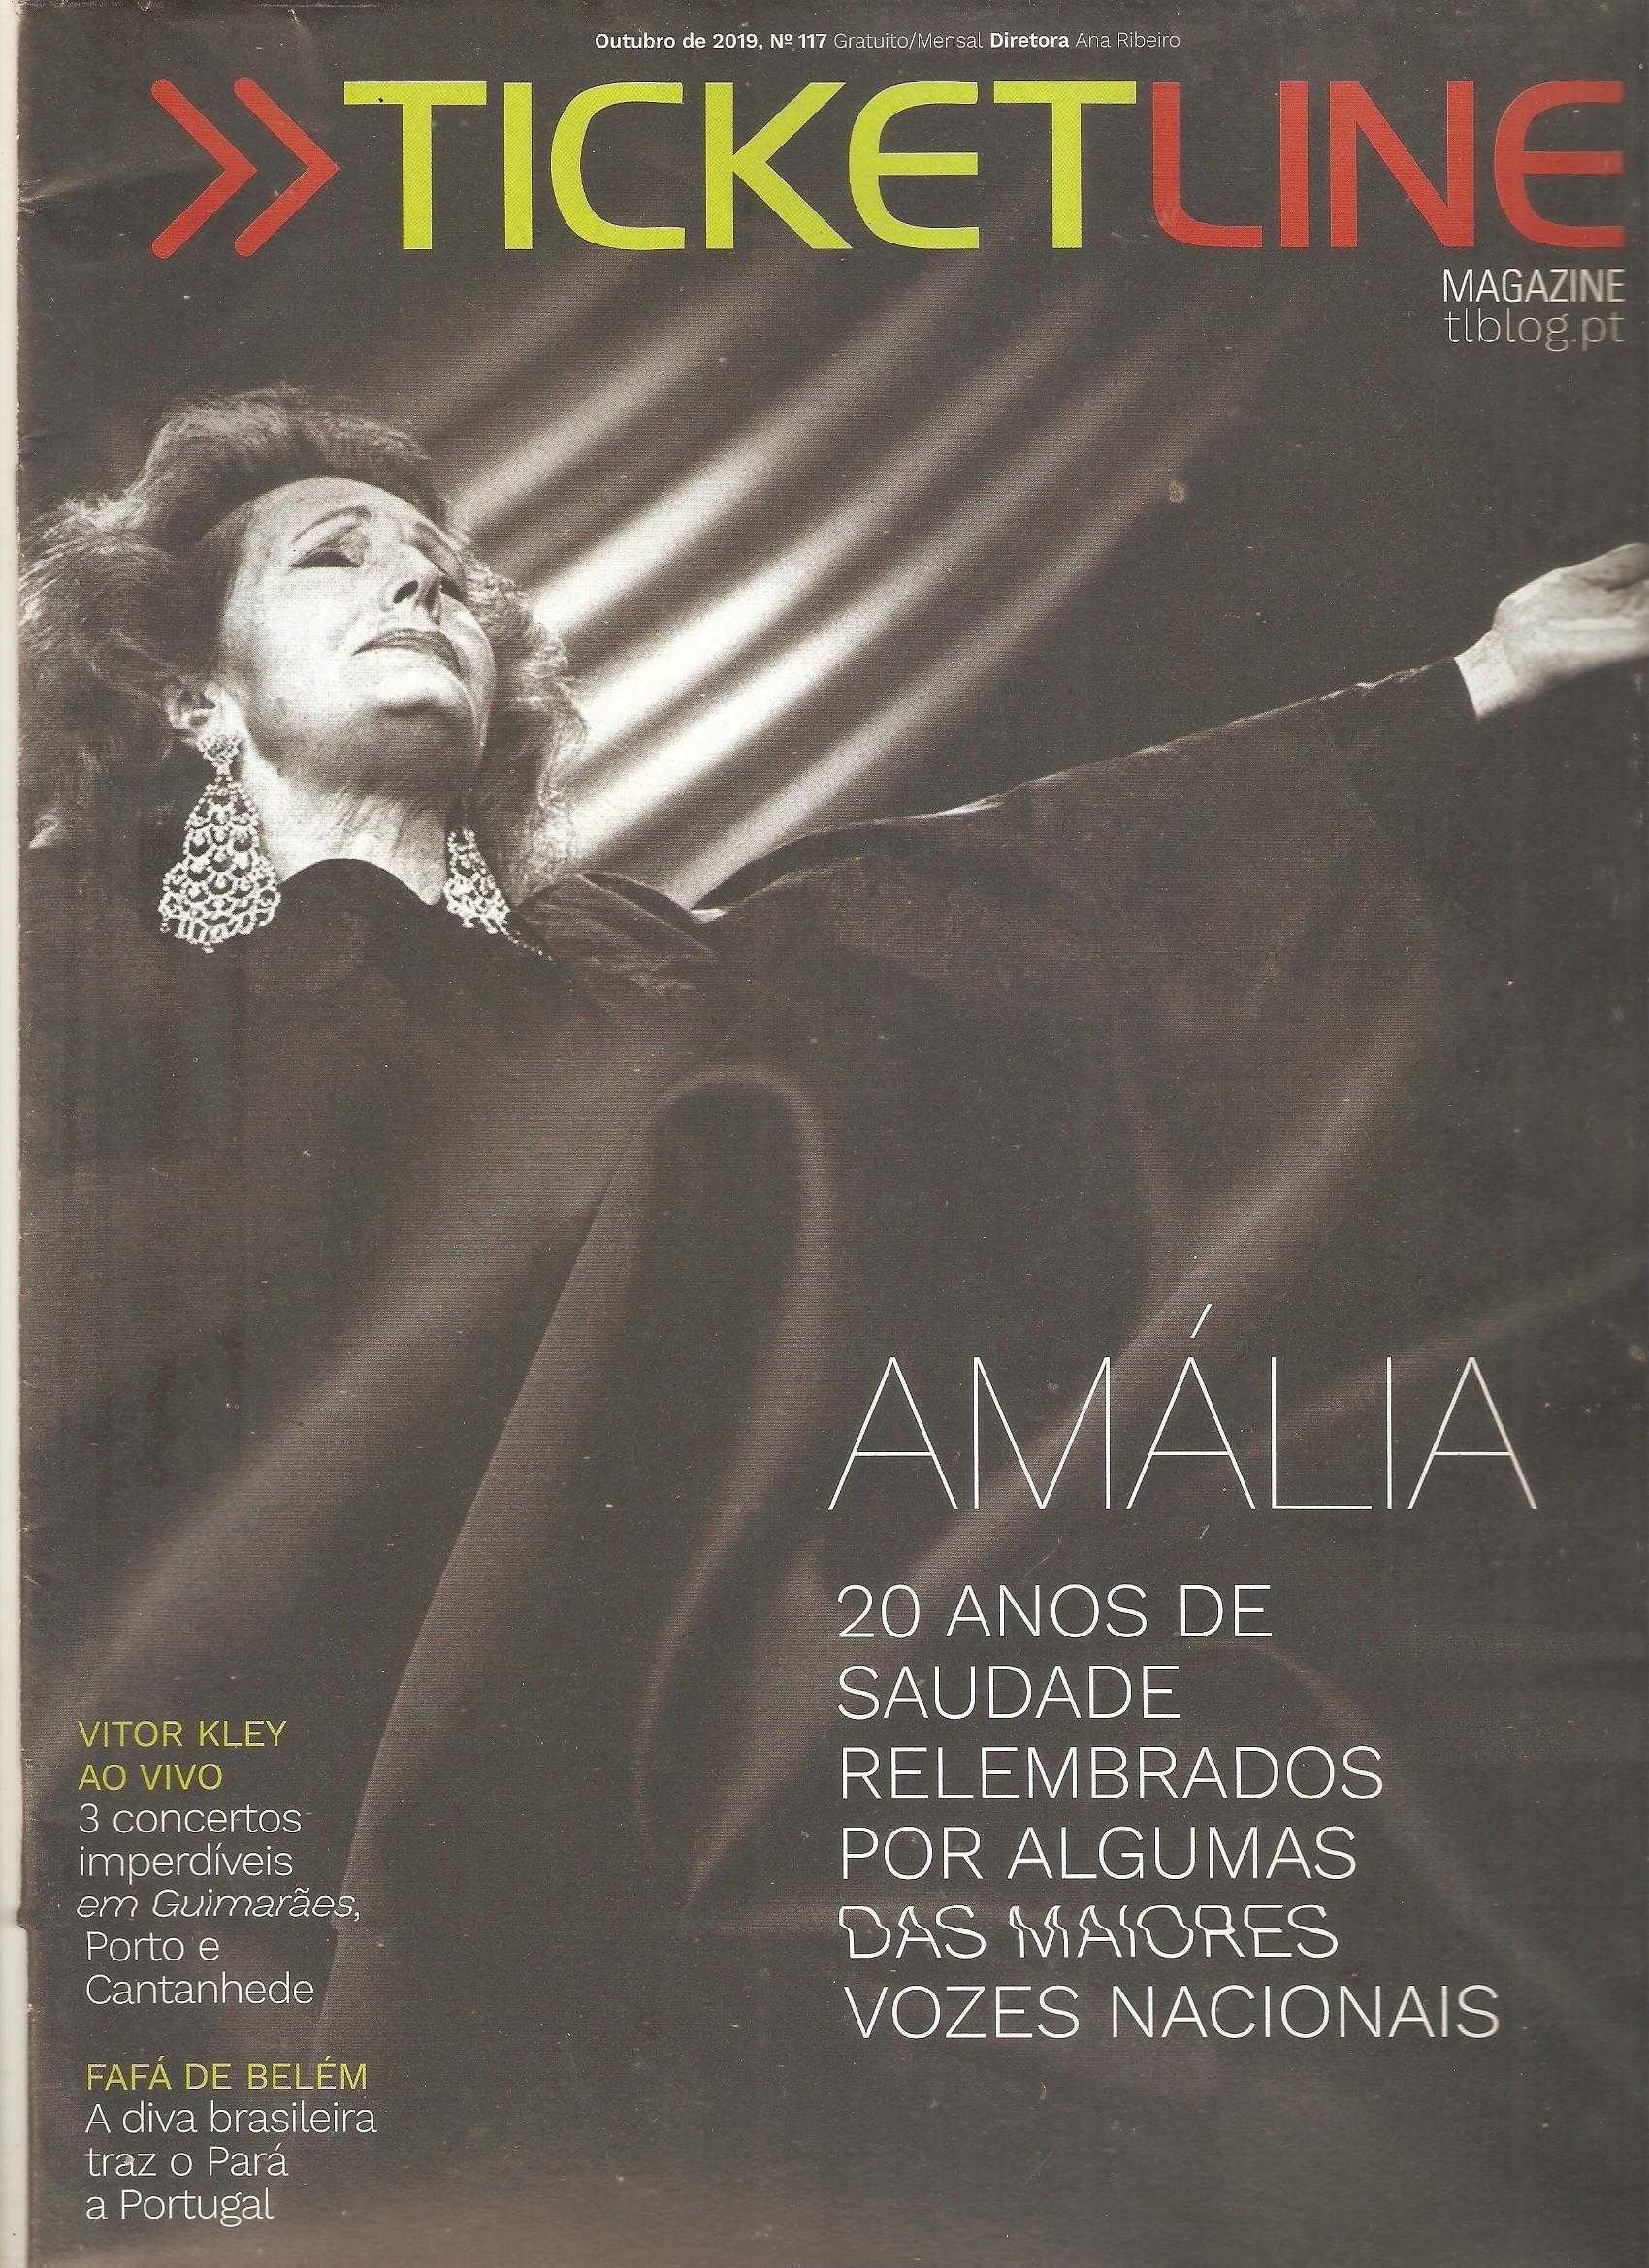 Amália Rodrigues a saudade em publicação de 2019